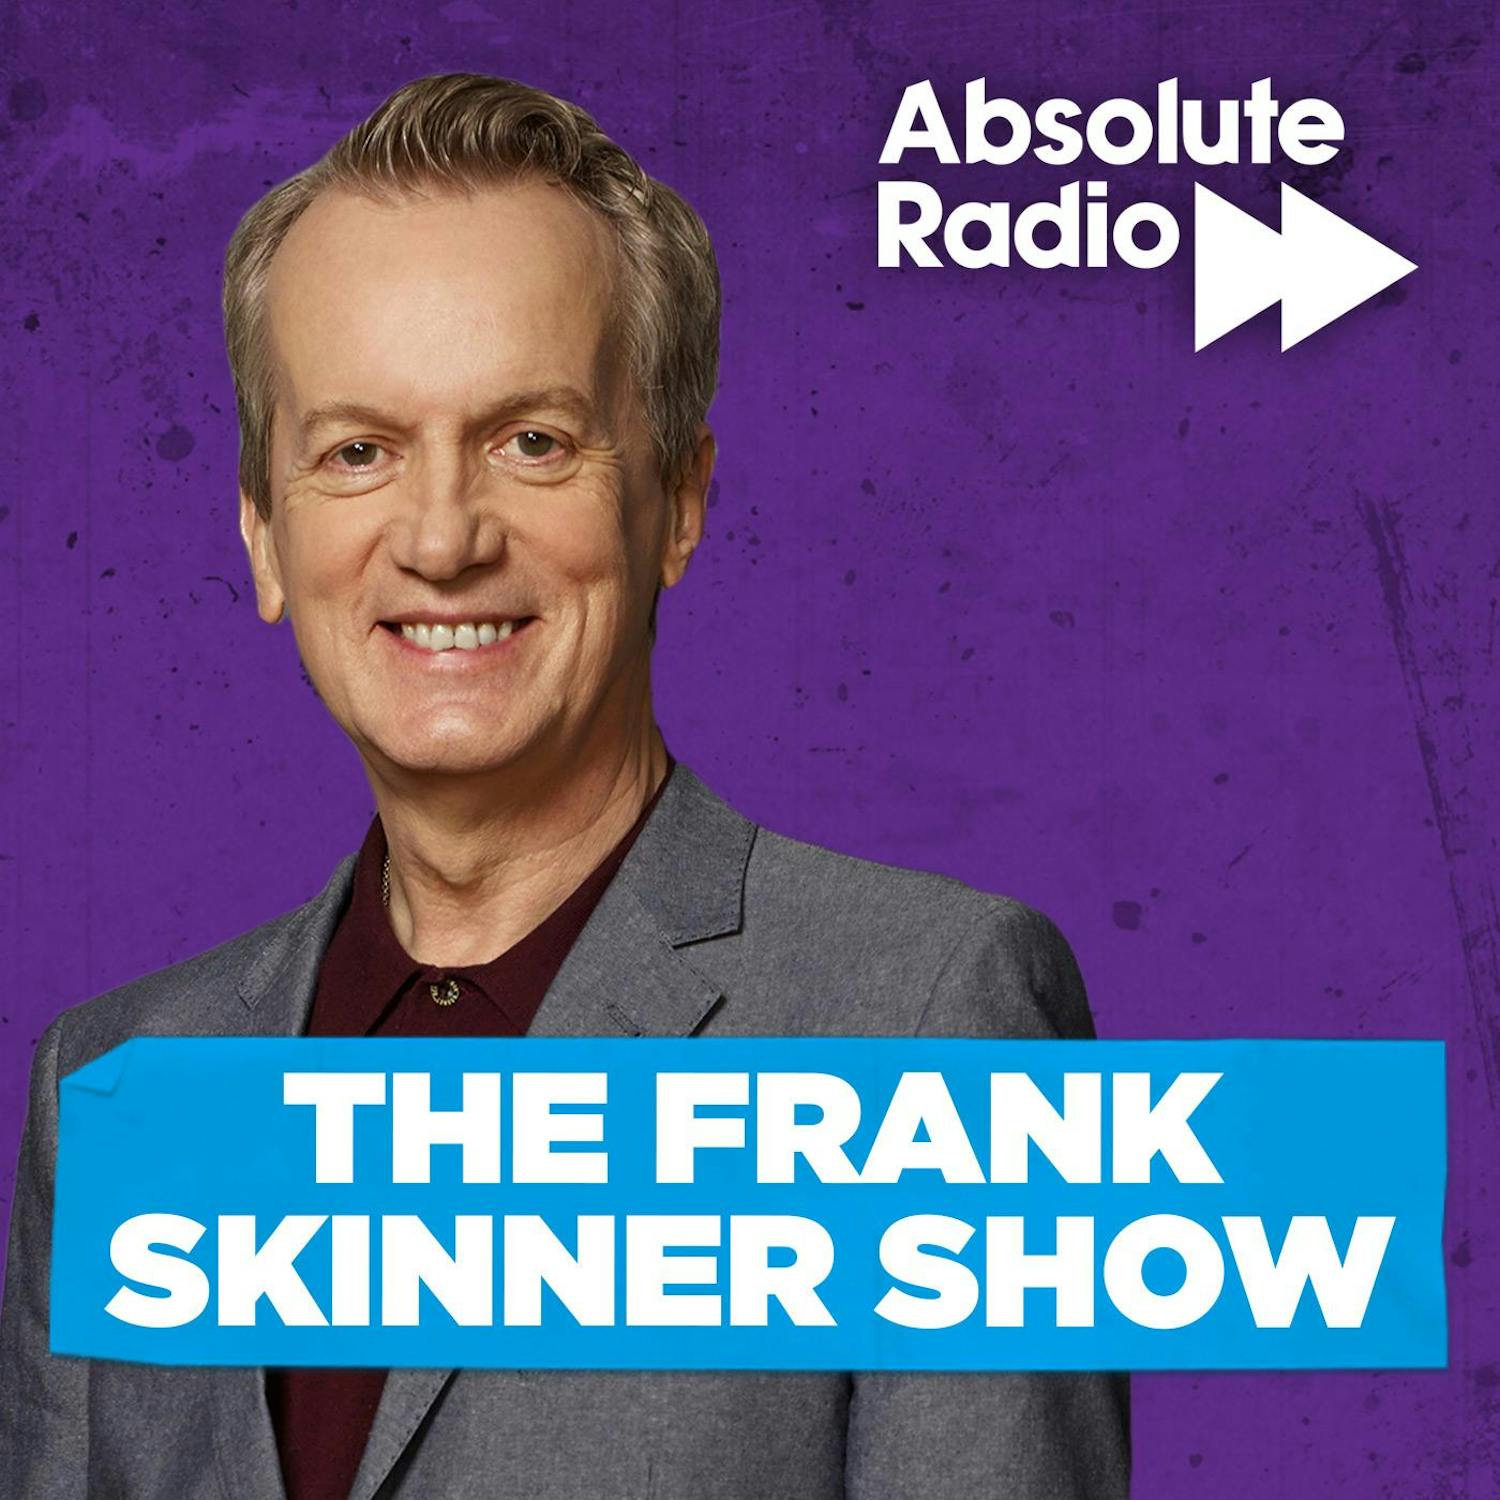 The Frank Skinner Show - Definitely Madeley